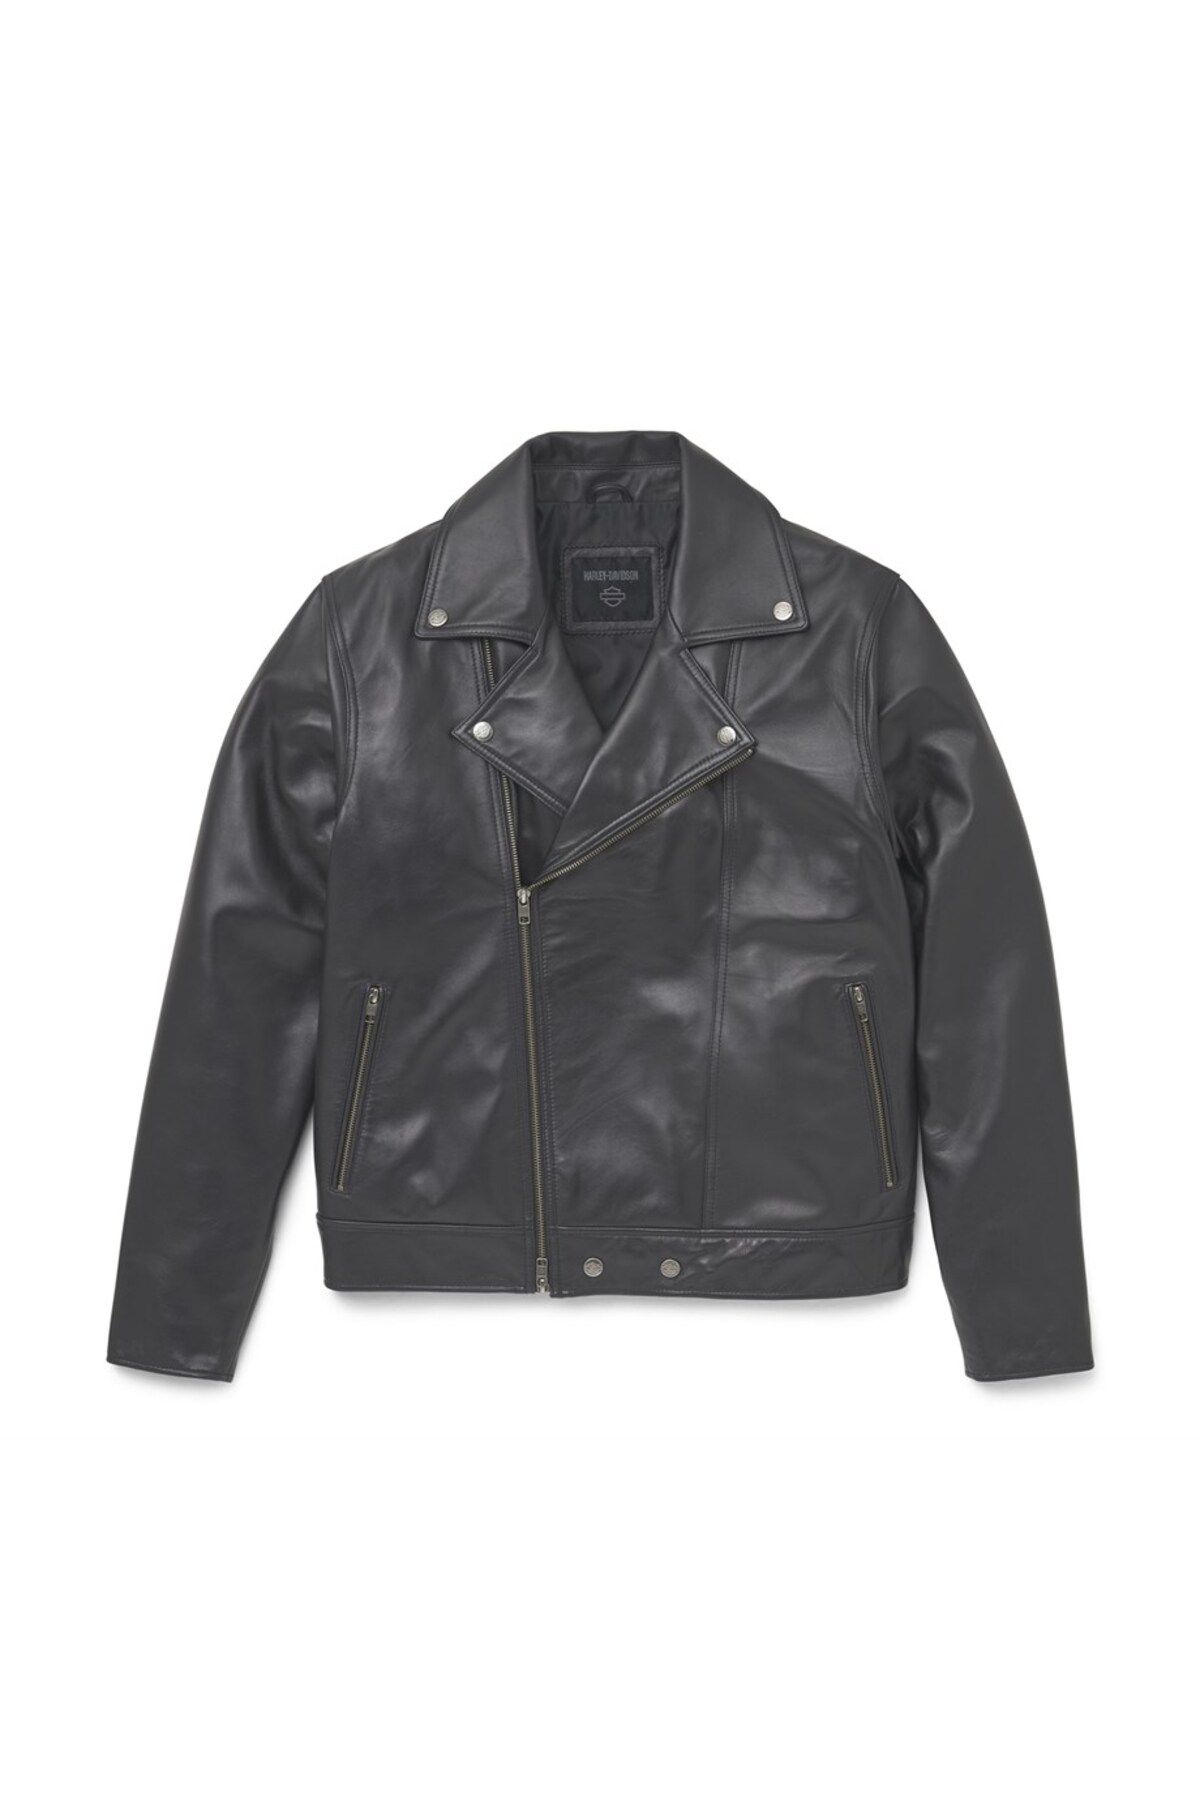 Harley Davidson Harley-davidson Men's Lisbon Debossed Leather Jacket